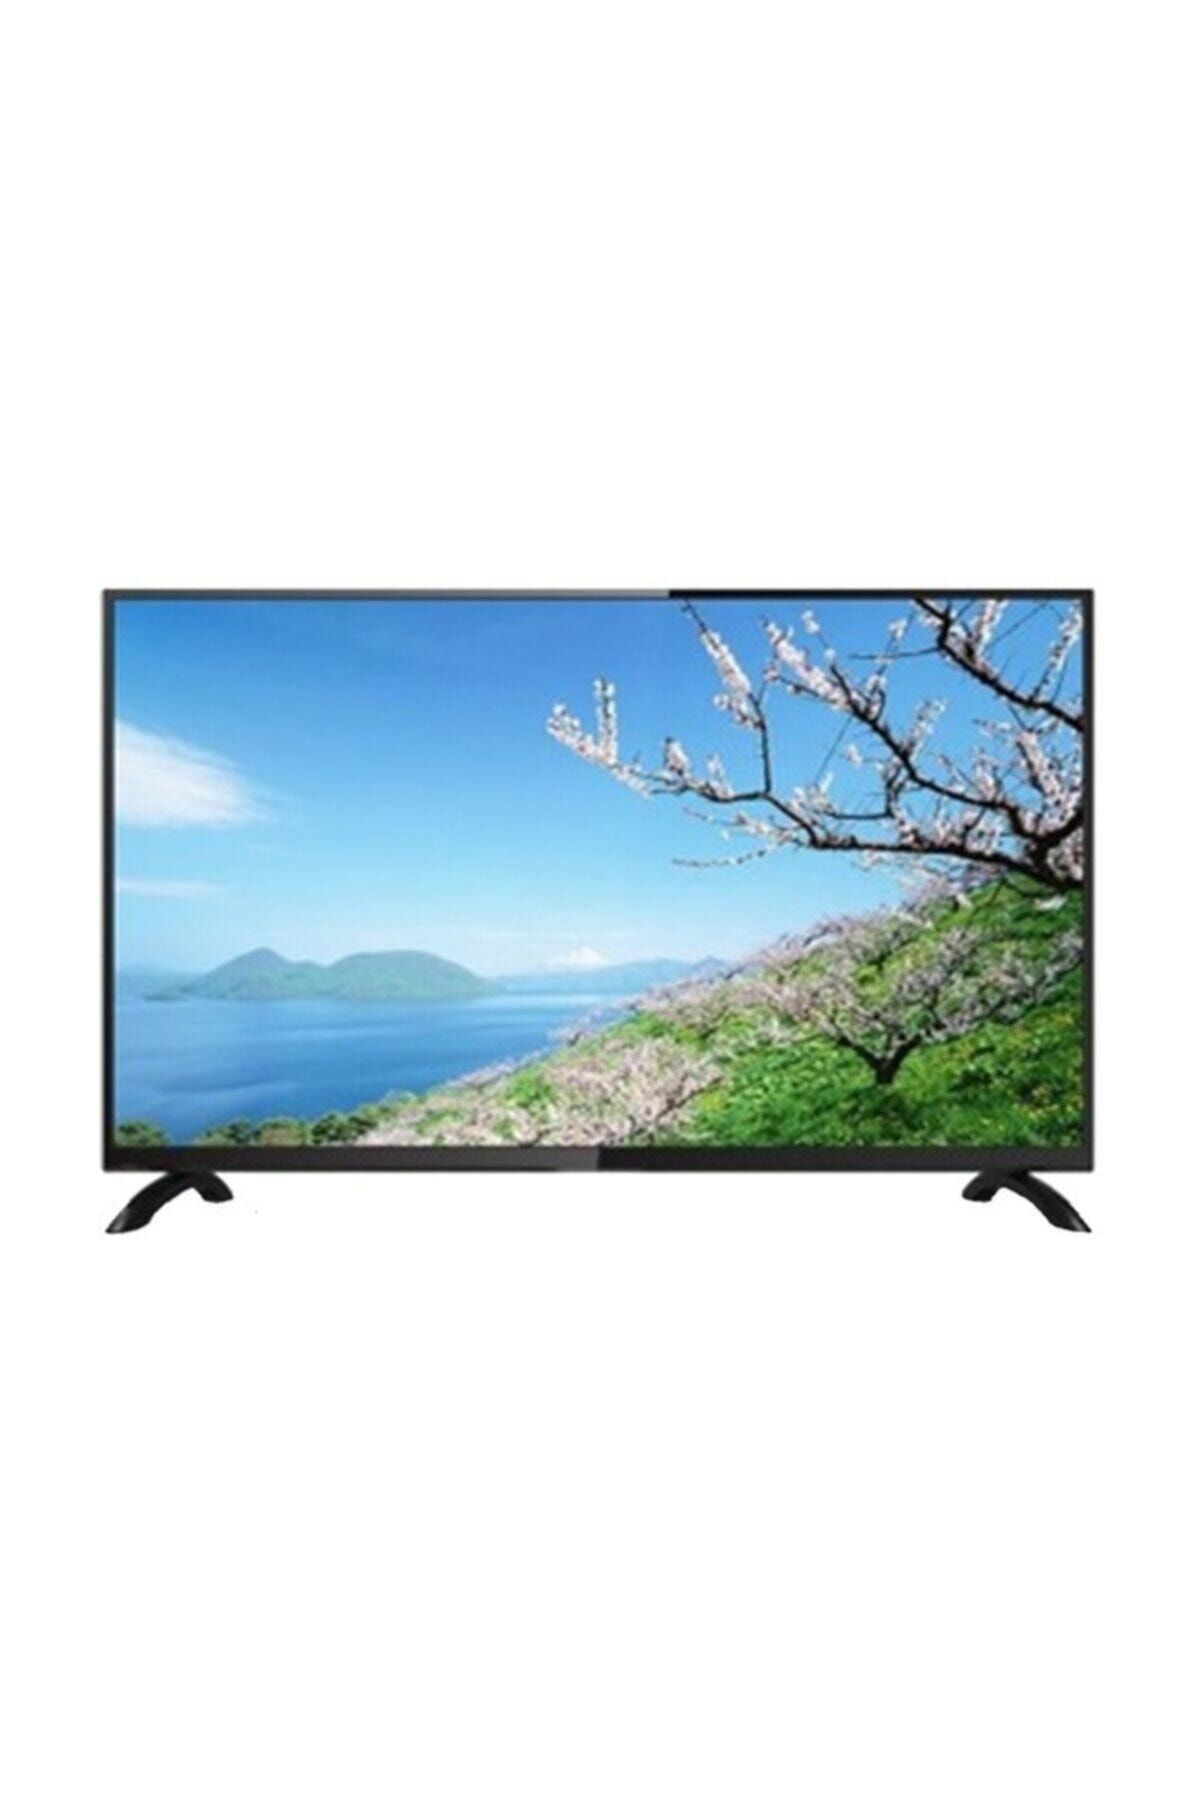 Blaupunkt 42" Ekran Uydu Alıcılı Full HD LED TV Fiyatı, Yorumları -